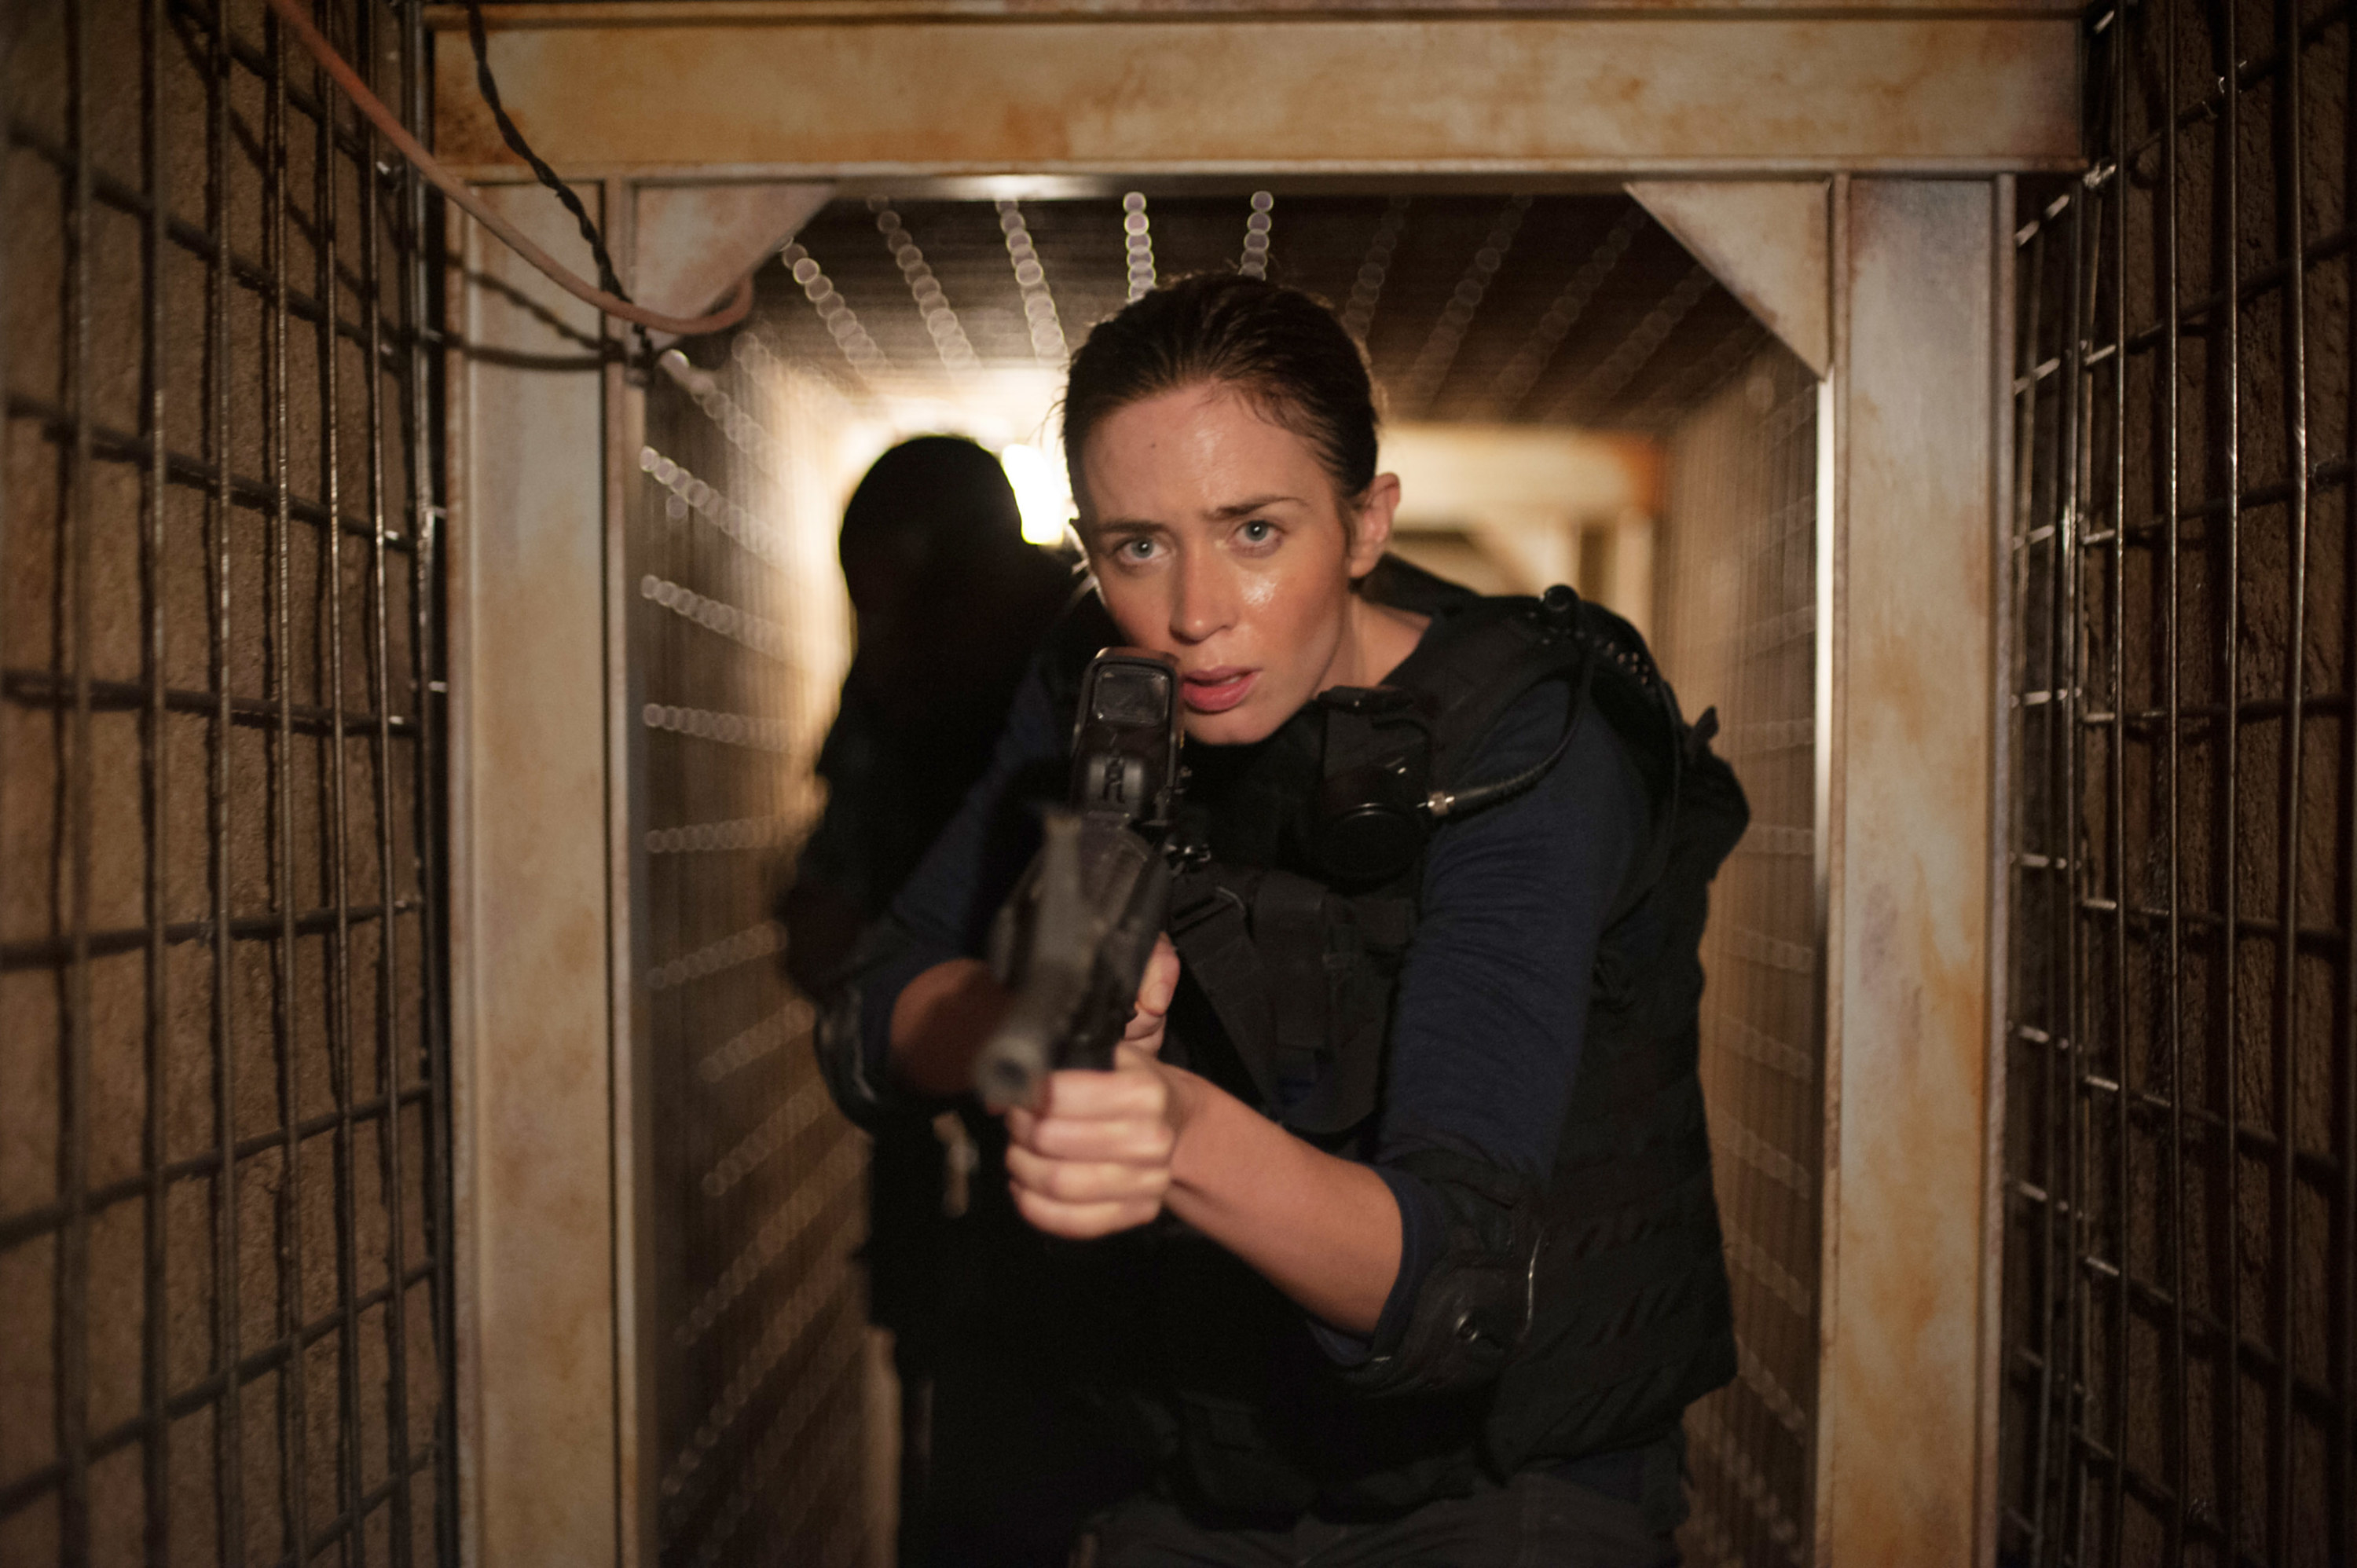 Emily Blunt as an FBI agent, holding a machine gun, wearing a bullet proof vest, walking down a hidden tunnel